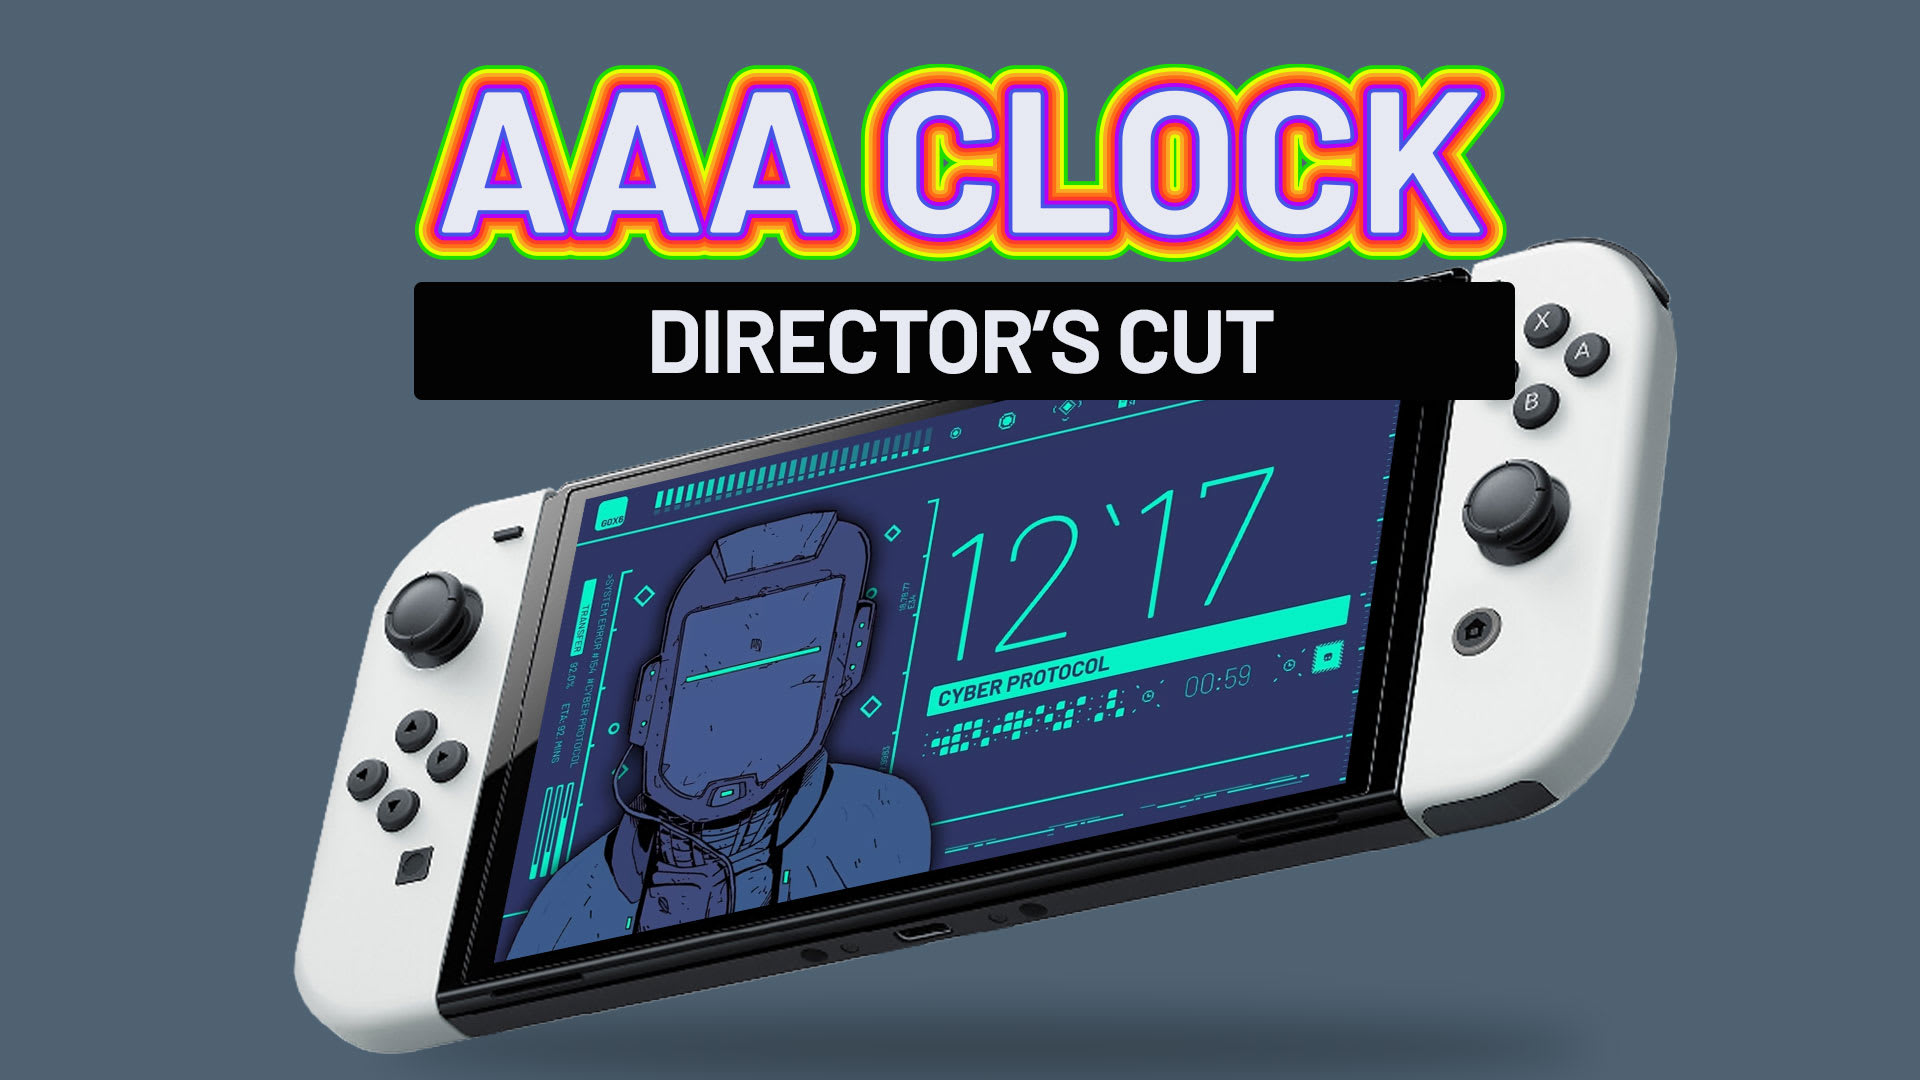 AAA Clock Director's Cut